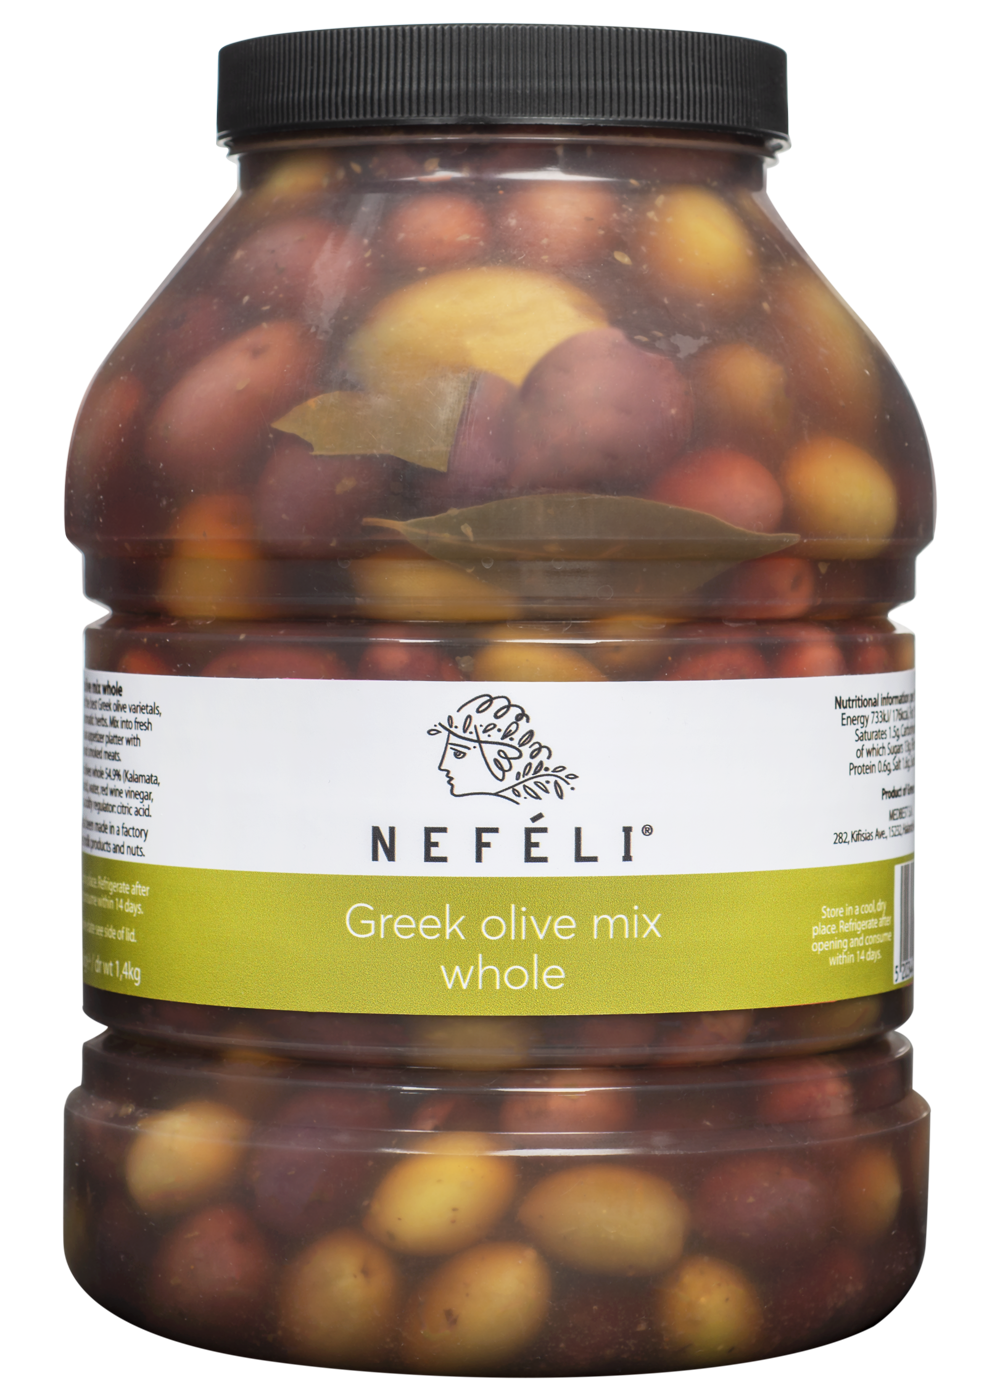 Greek olive mix whole in 2.4lt plastic jar